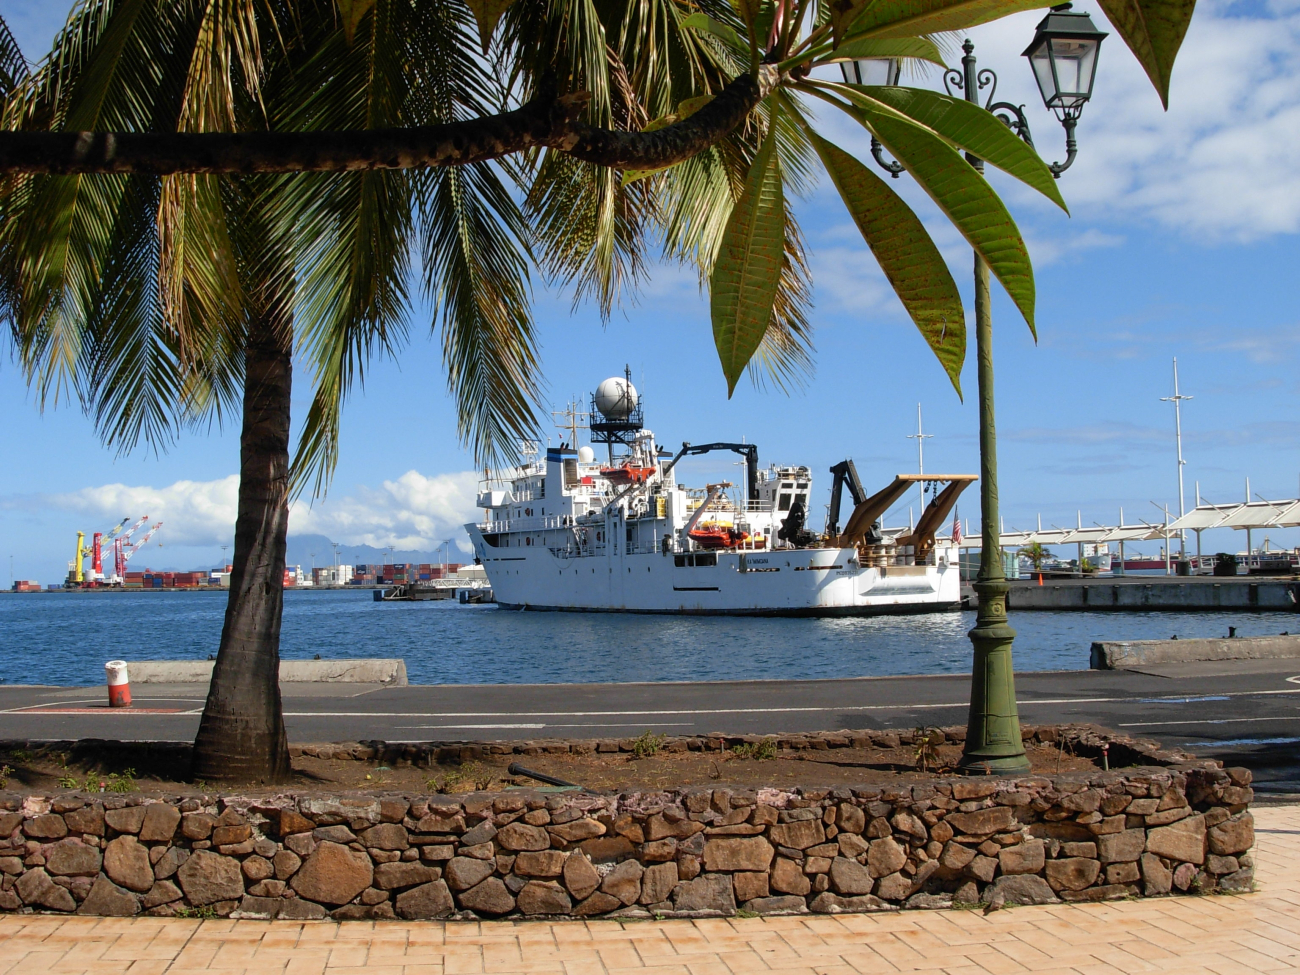 The NOAA Ship KA'IMIMOANA (R333) tied up at Papeete, Tahiti